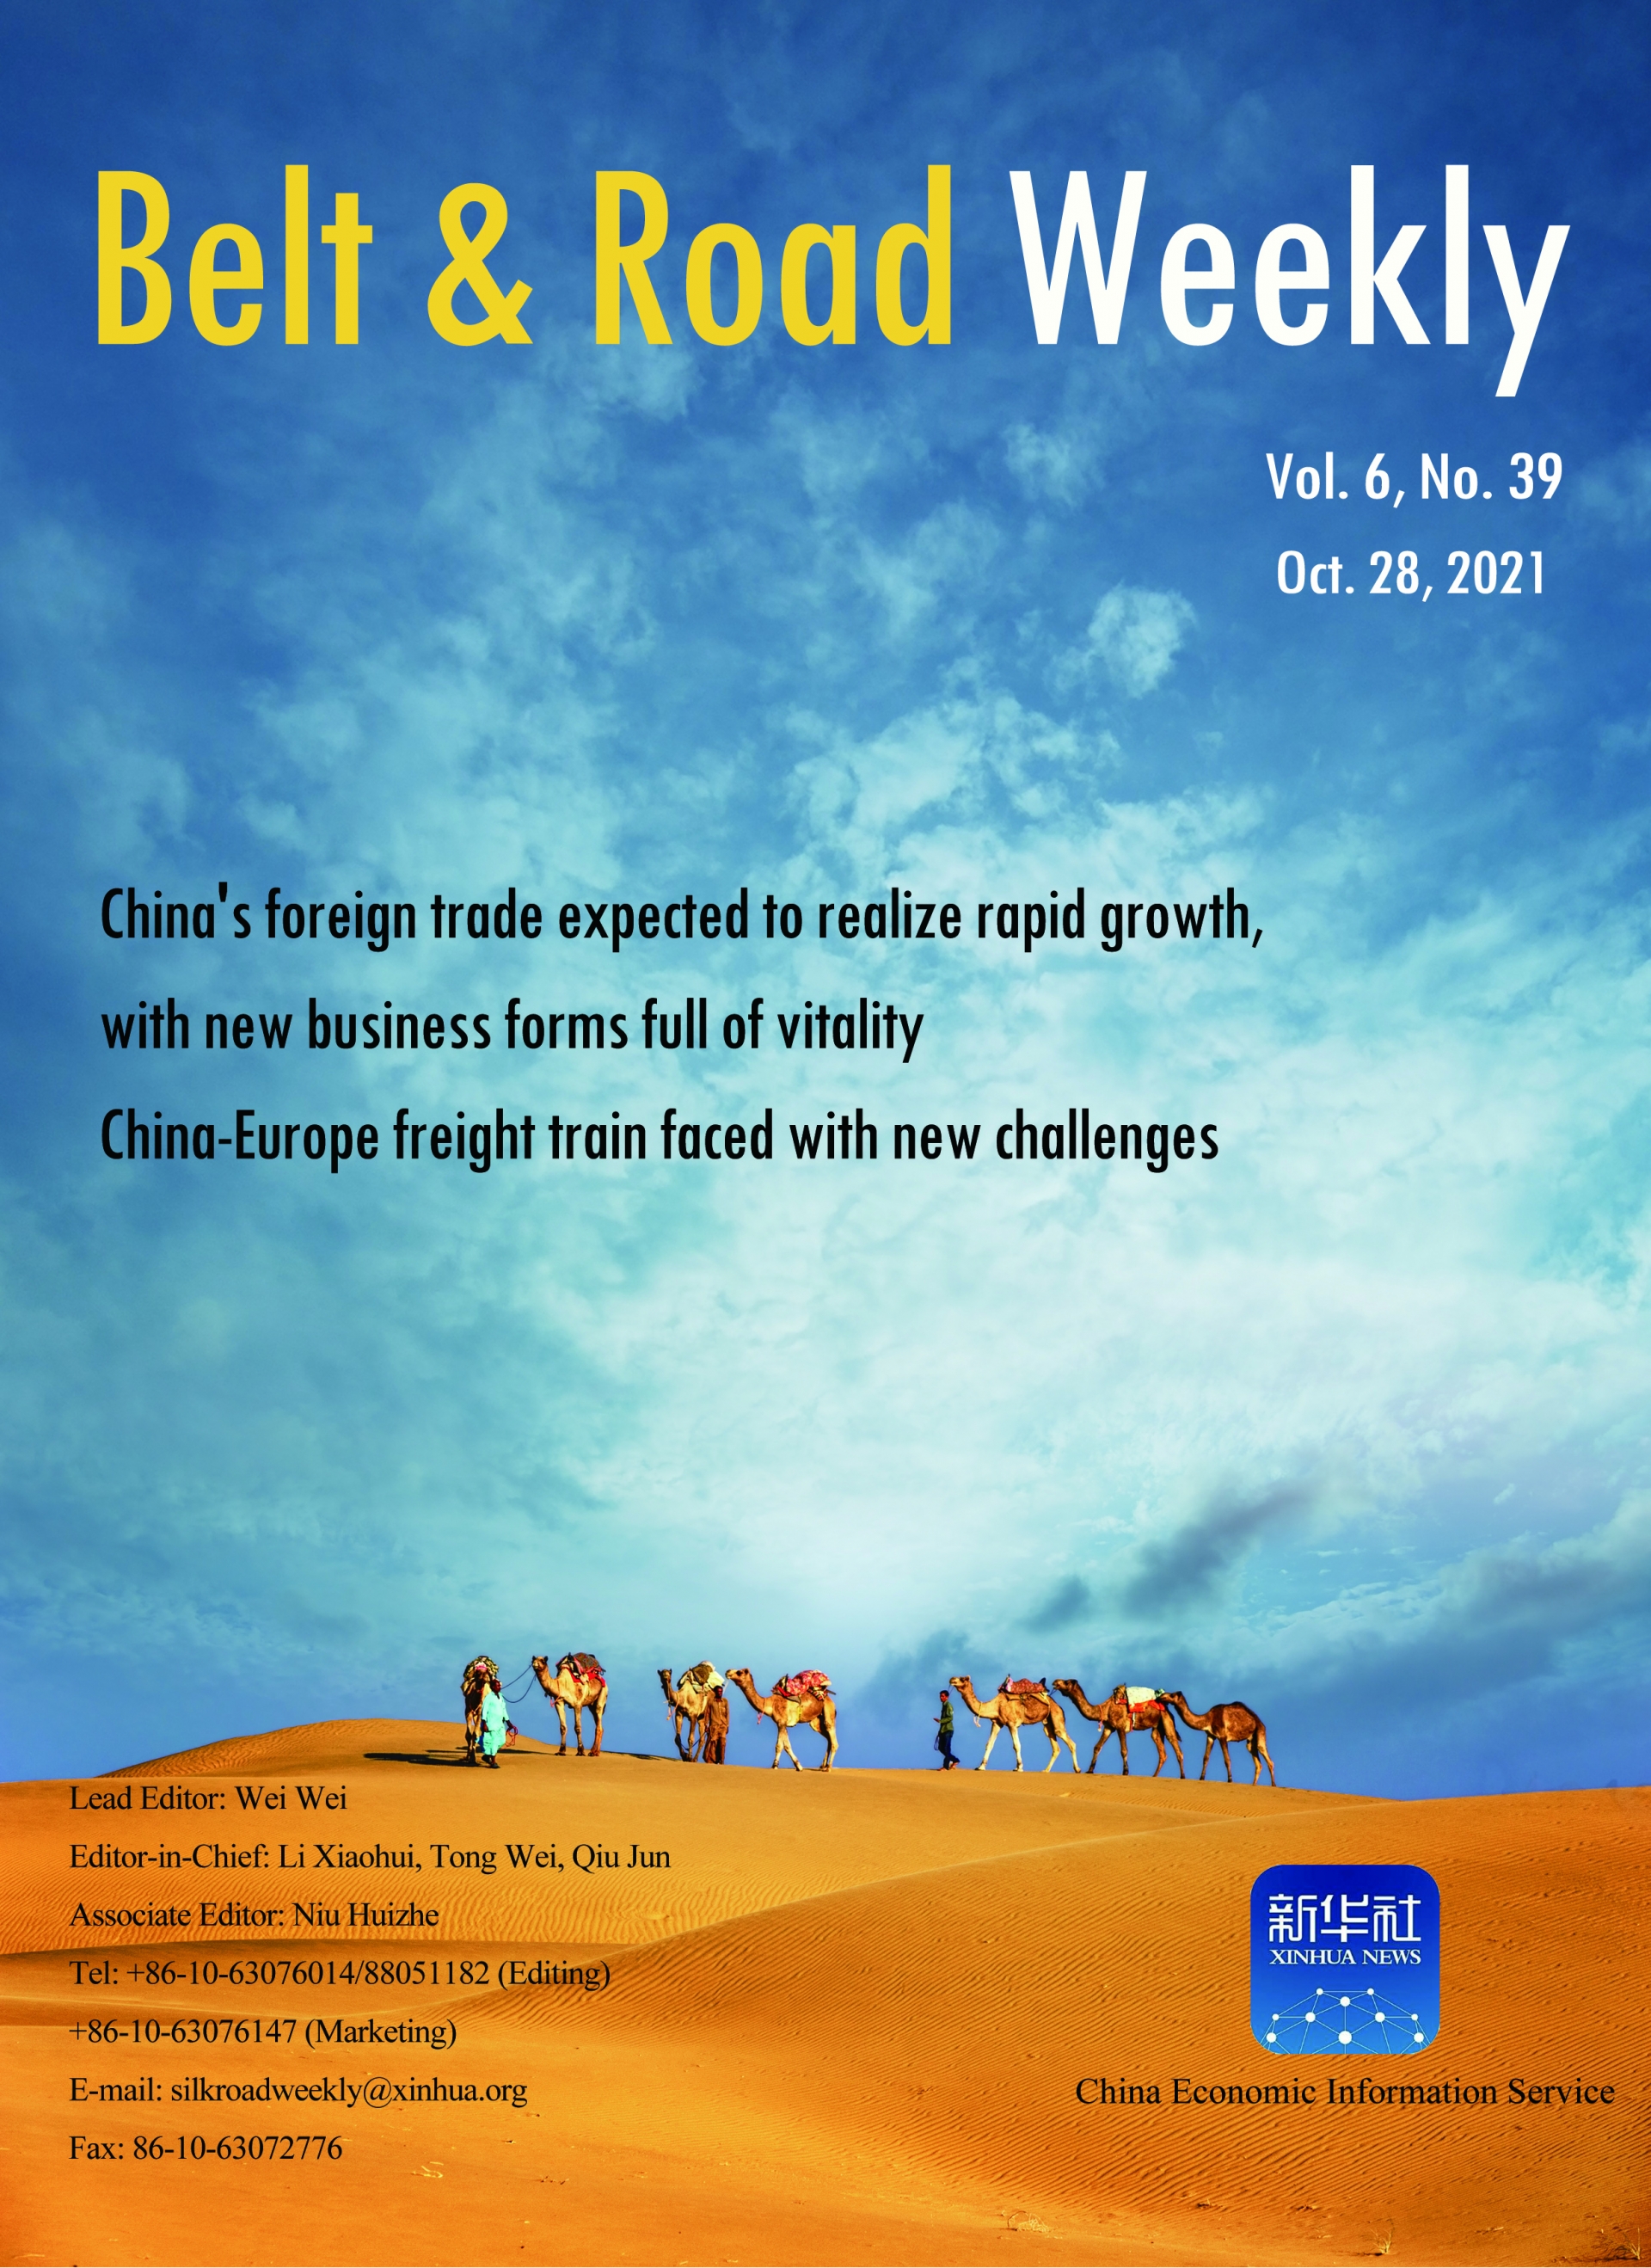 Belt & Road Weekly Vol. 6 No. 39